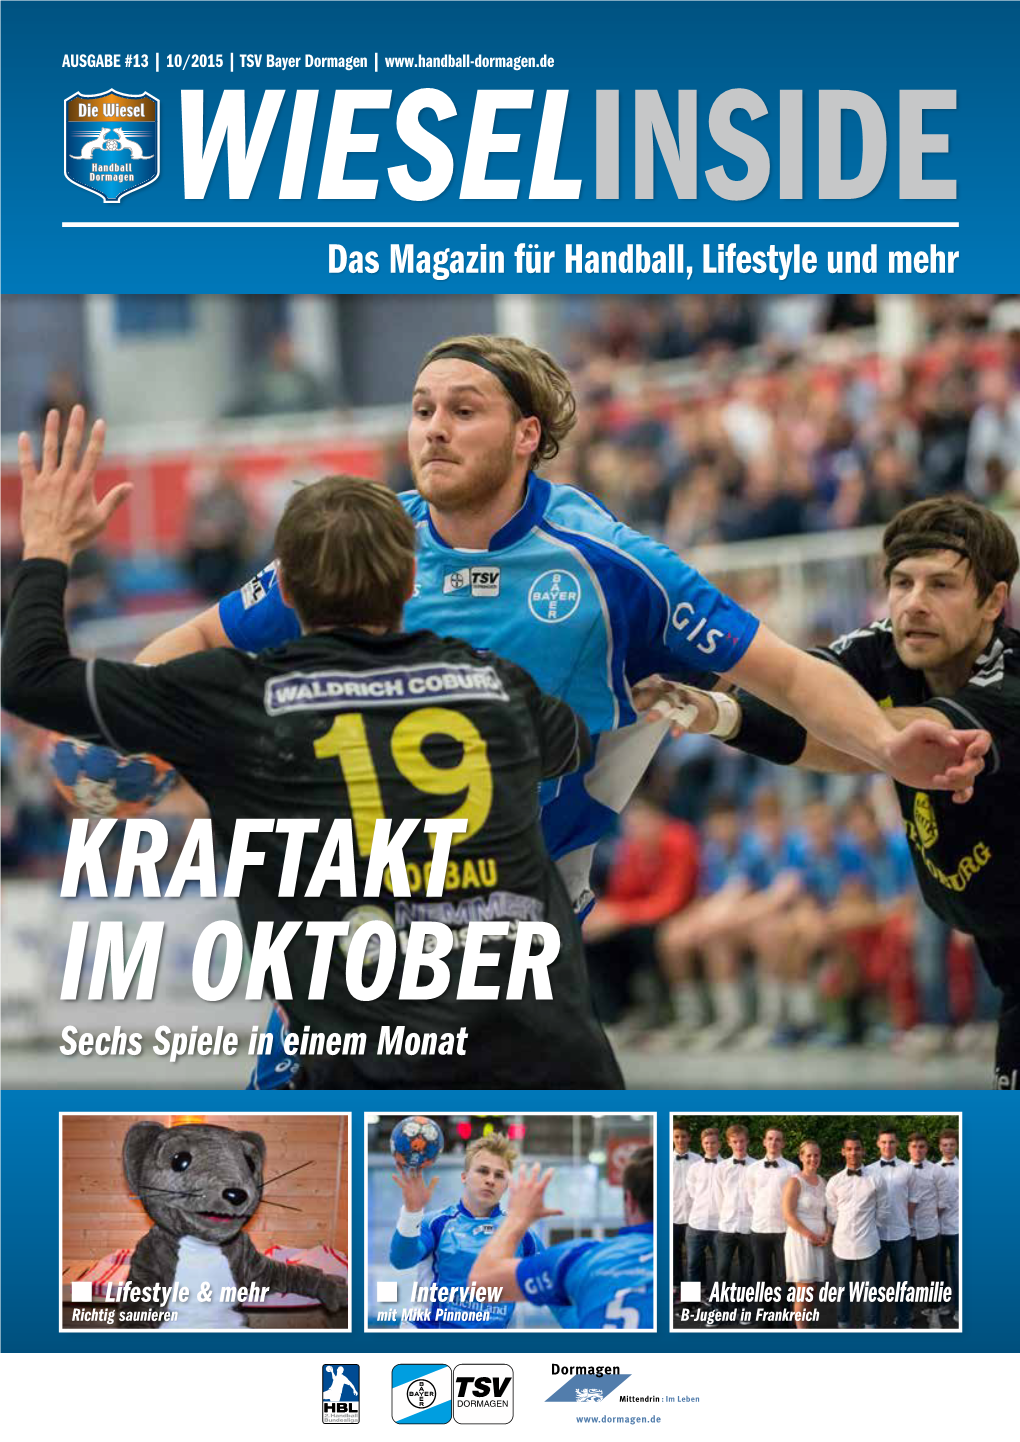 Sechs Spiele in Einem Monat Das Magazin Für Handball, Lifestyle Und Mehr